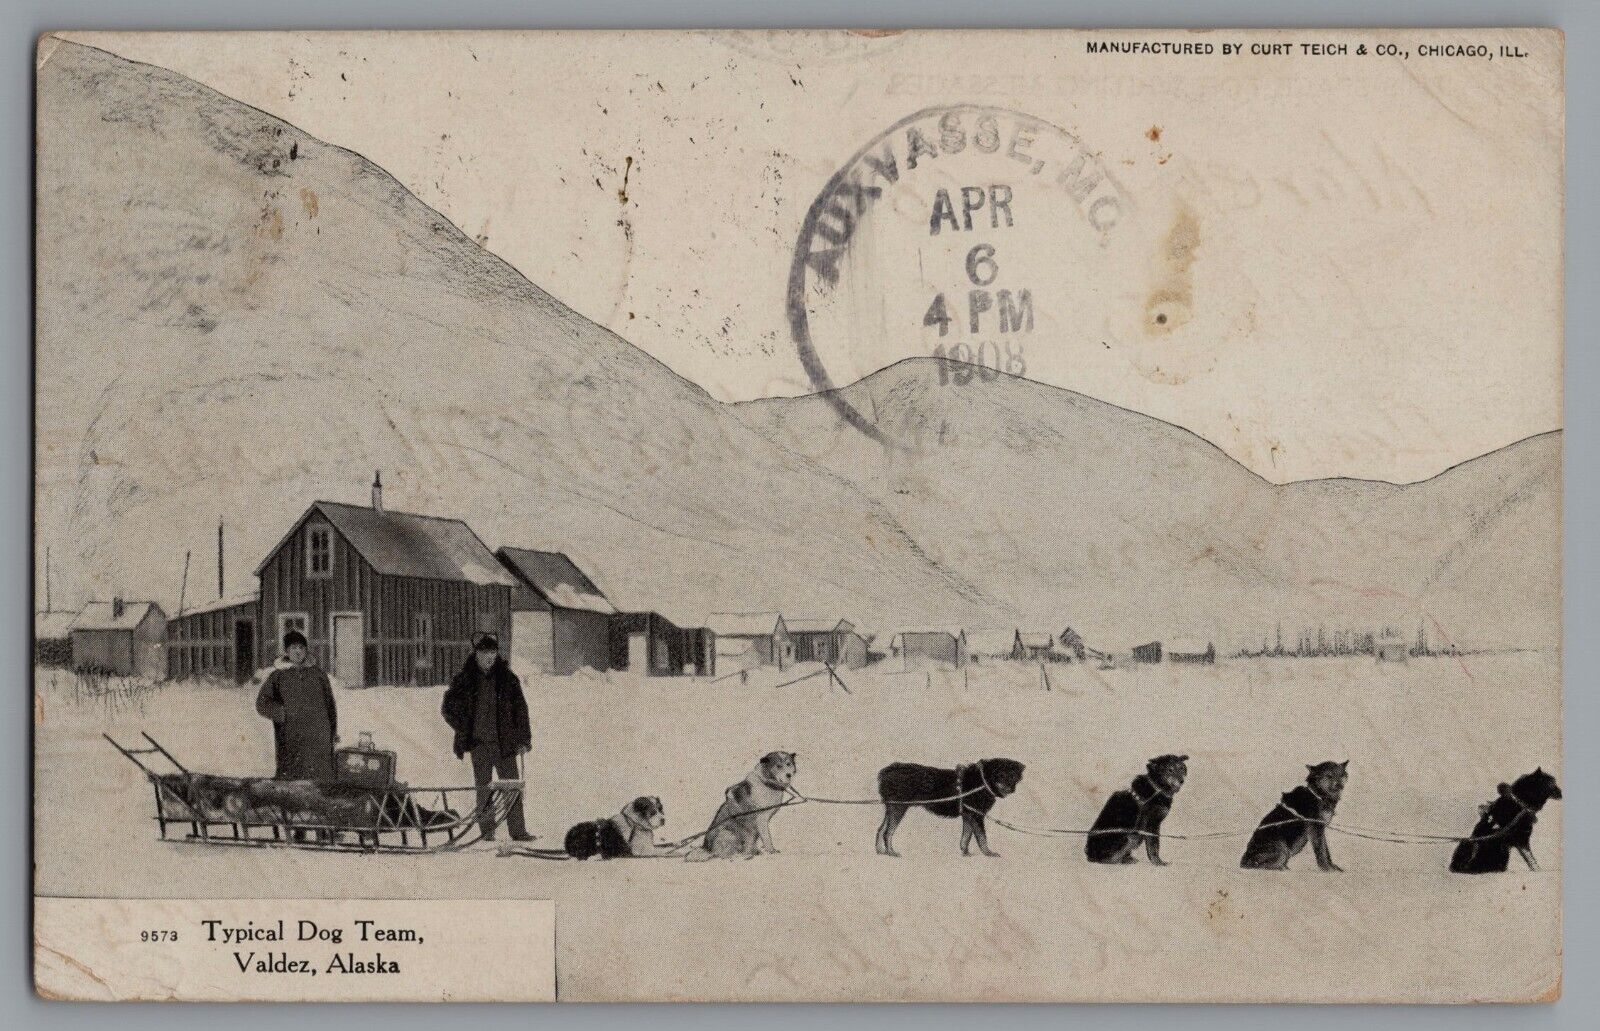 Sled Dog Team Valdez Alaska c. 1908 Snowy Landscape A14